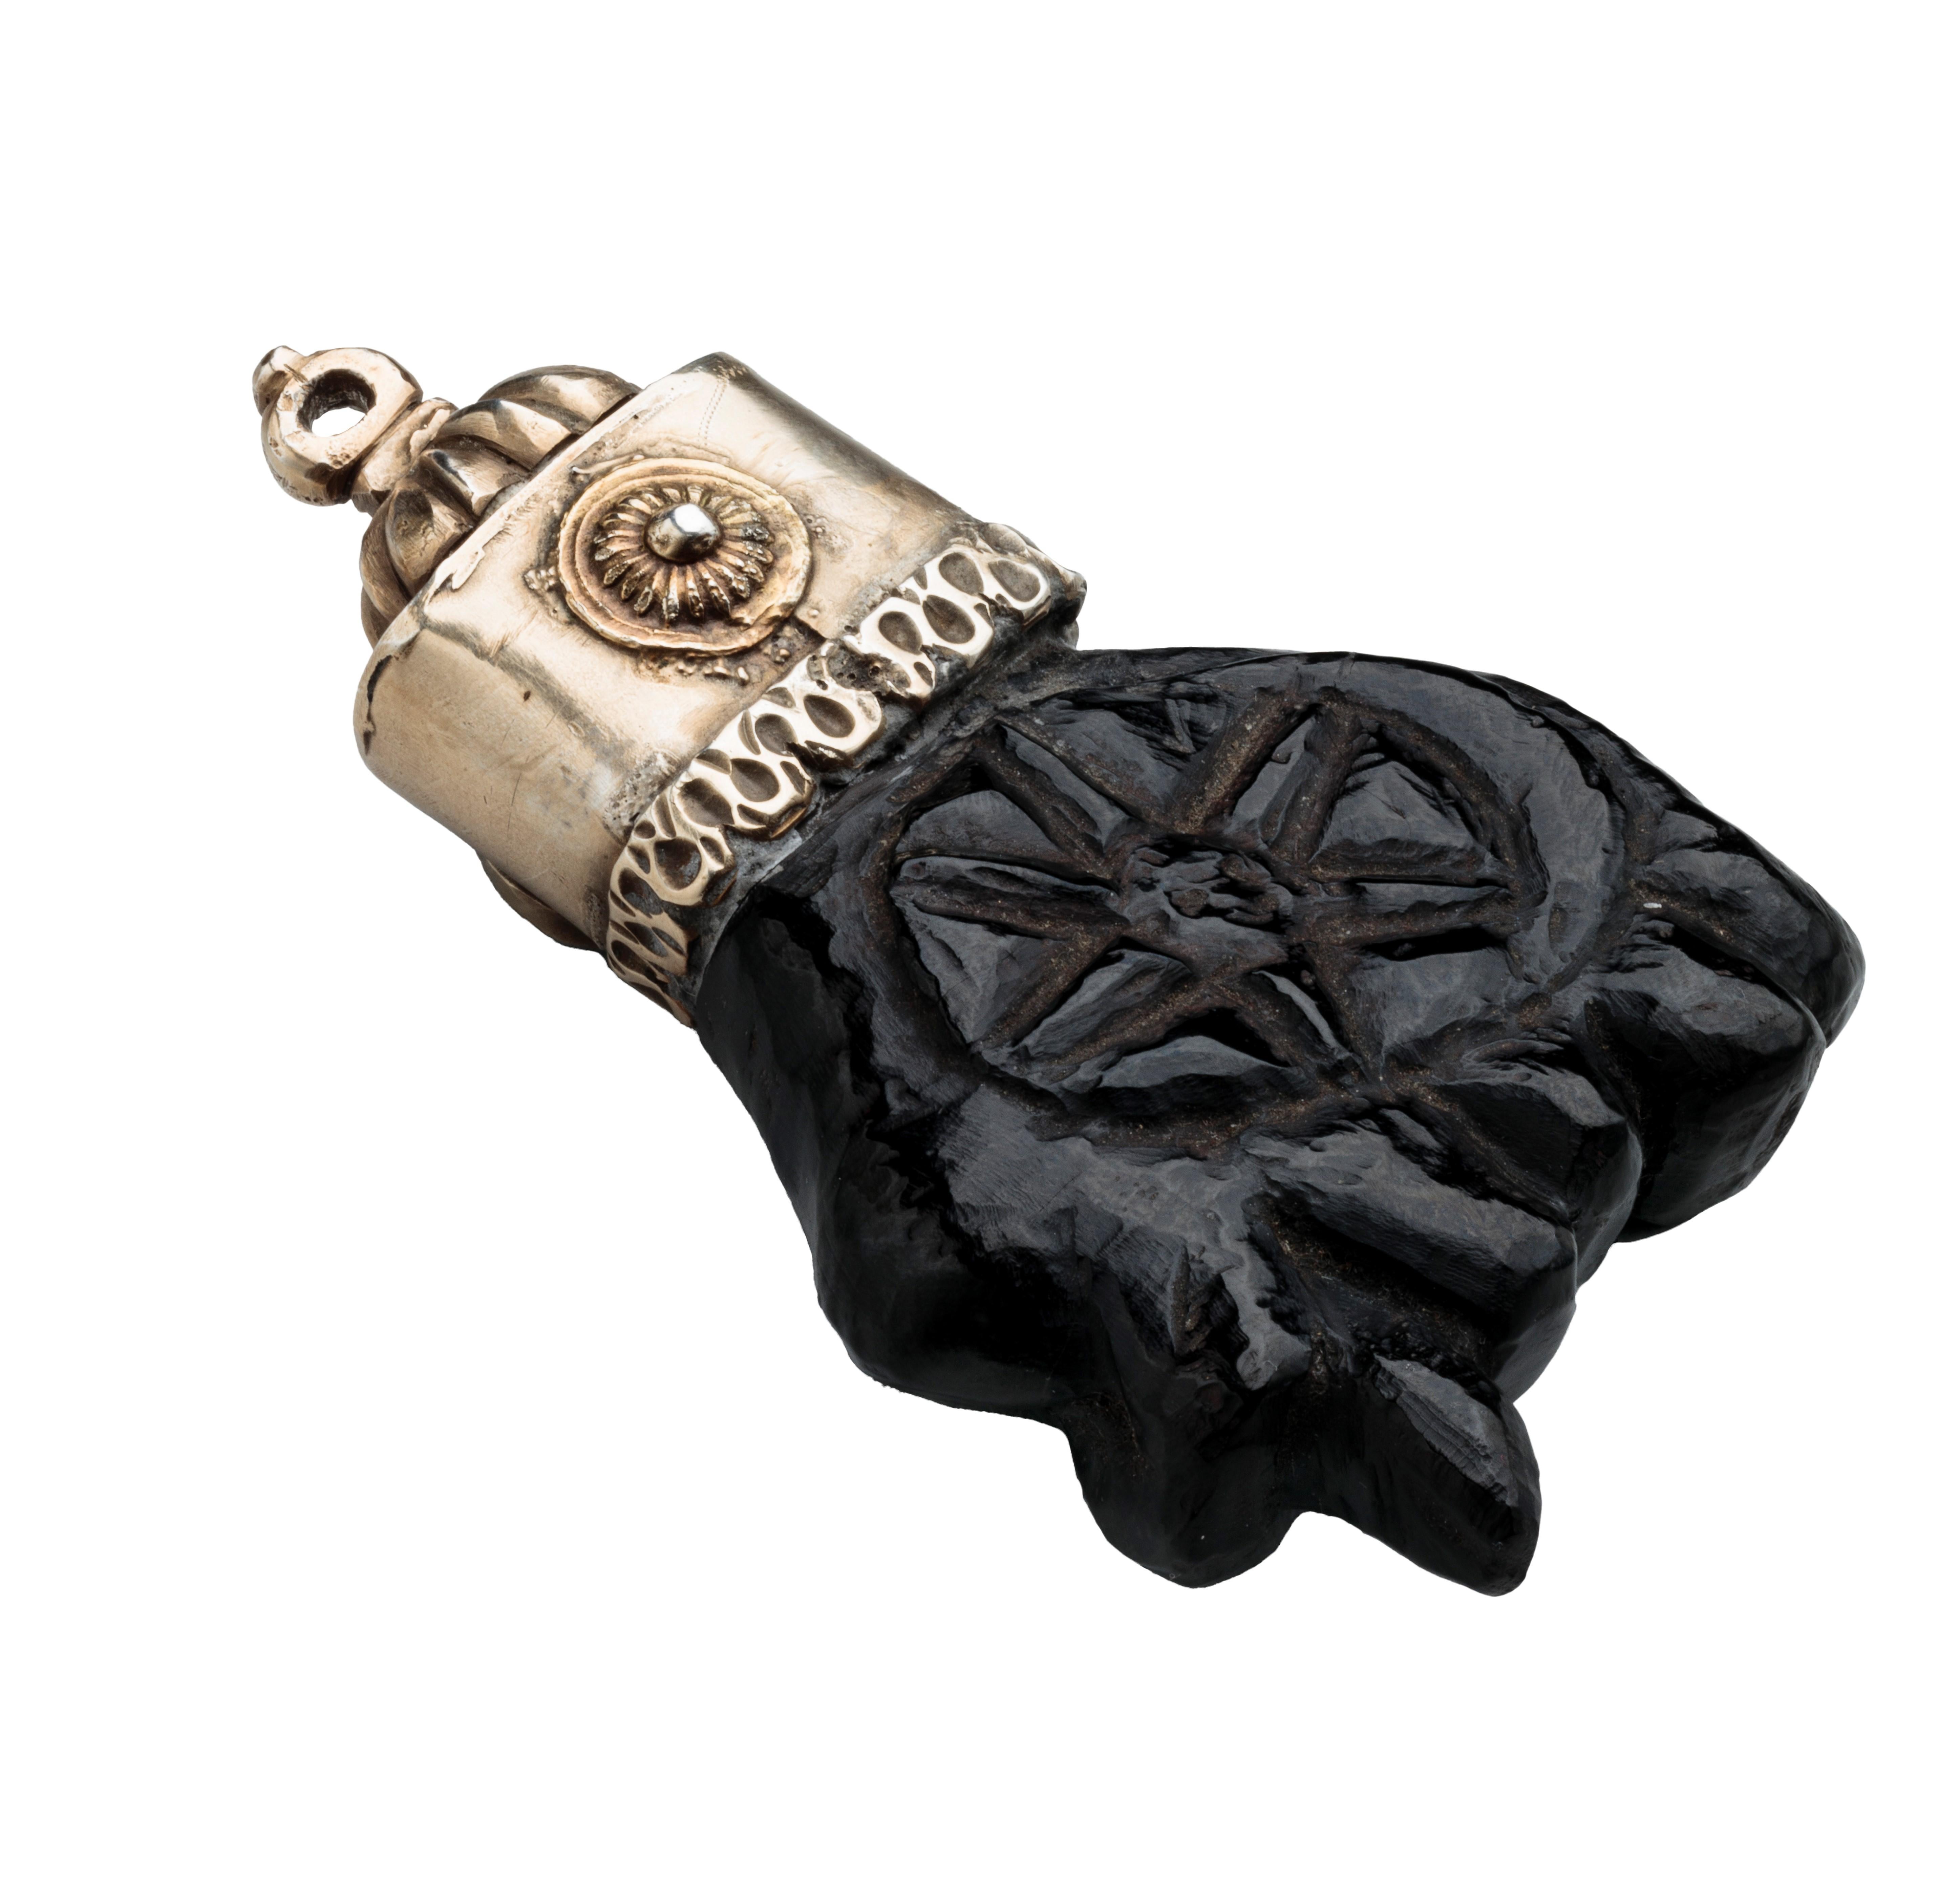 PENDENTIF AMULETTE AVEC FIGUE 
Espagne, vers 1620-1630 
Jet, argent et émail 
Poids 60,7 grammes ; dimensions 85 × 49 × 18 mm 

Grand pendentif en forme de main sculptée dans le jais, le poing serré dans le geste de la figa (higa en espagnol). Dans